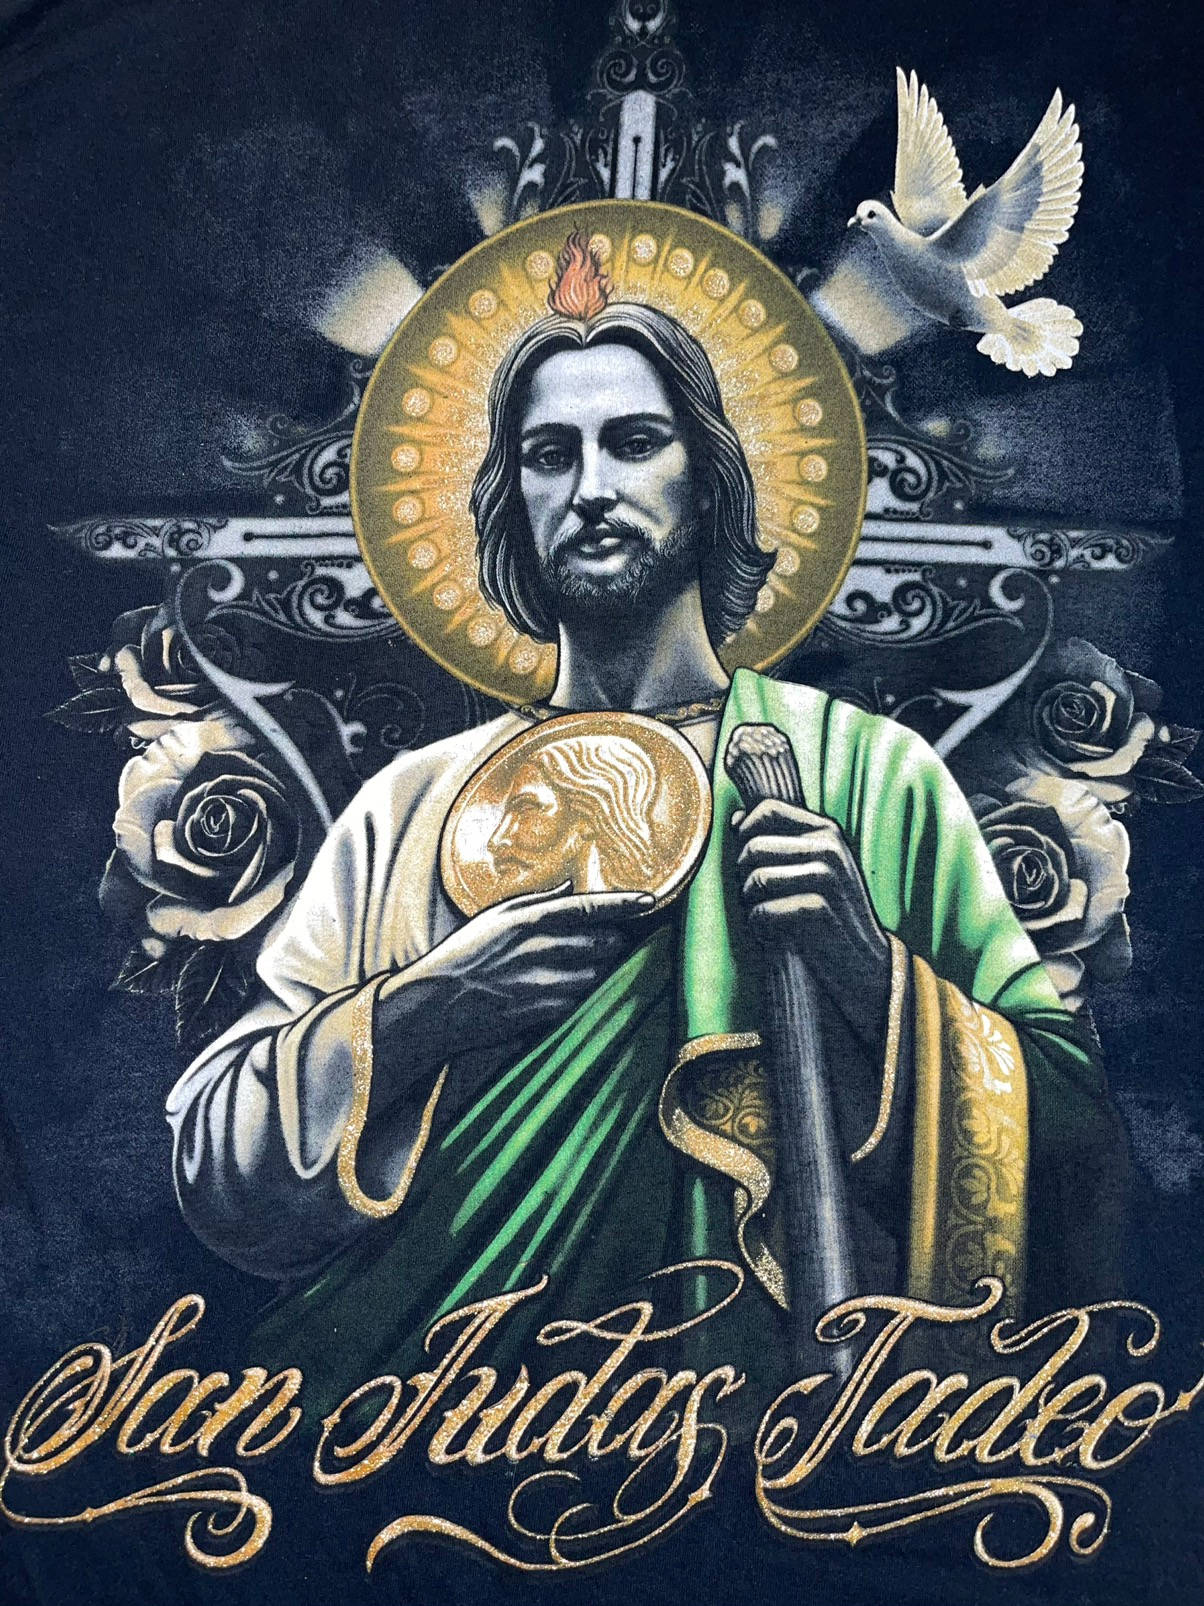 San Judas Tadeo baggrundsbillede. Wallpaper